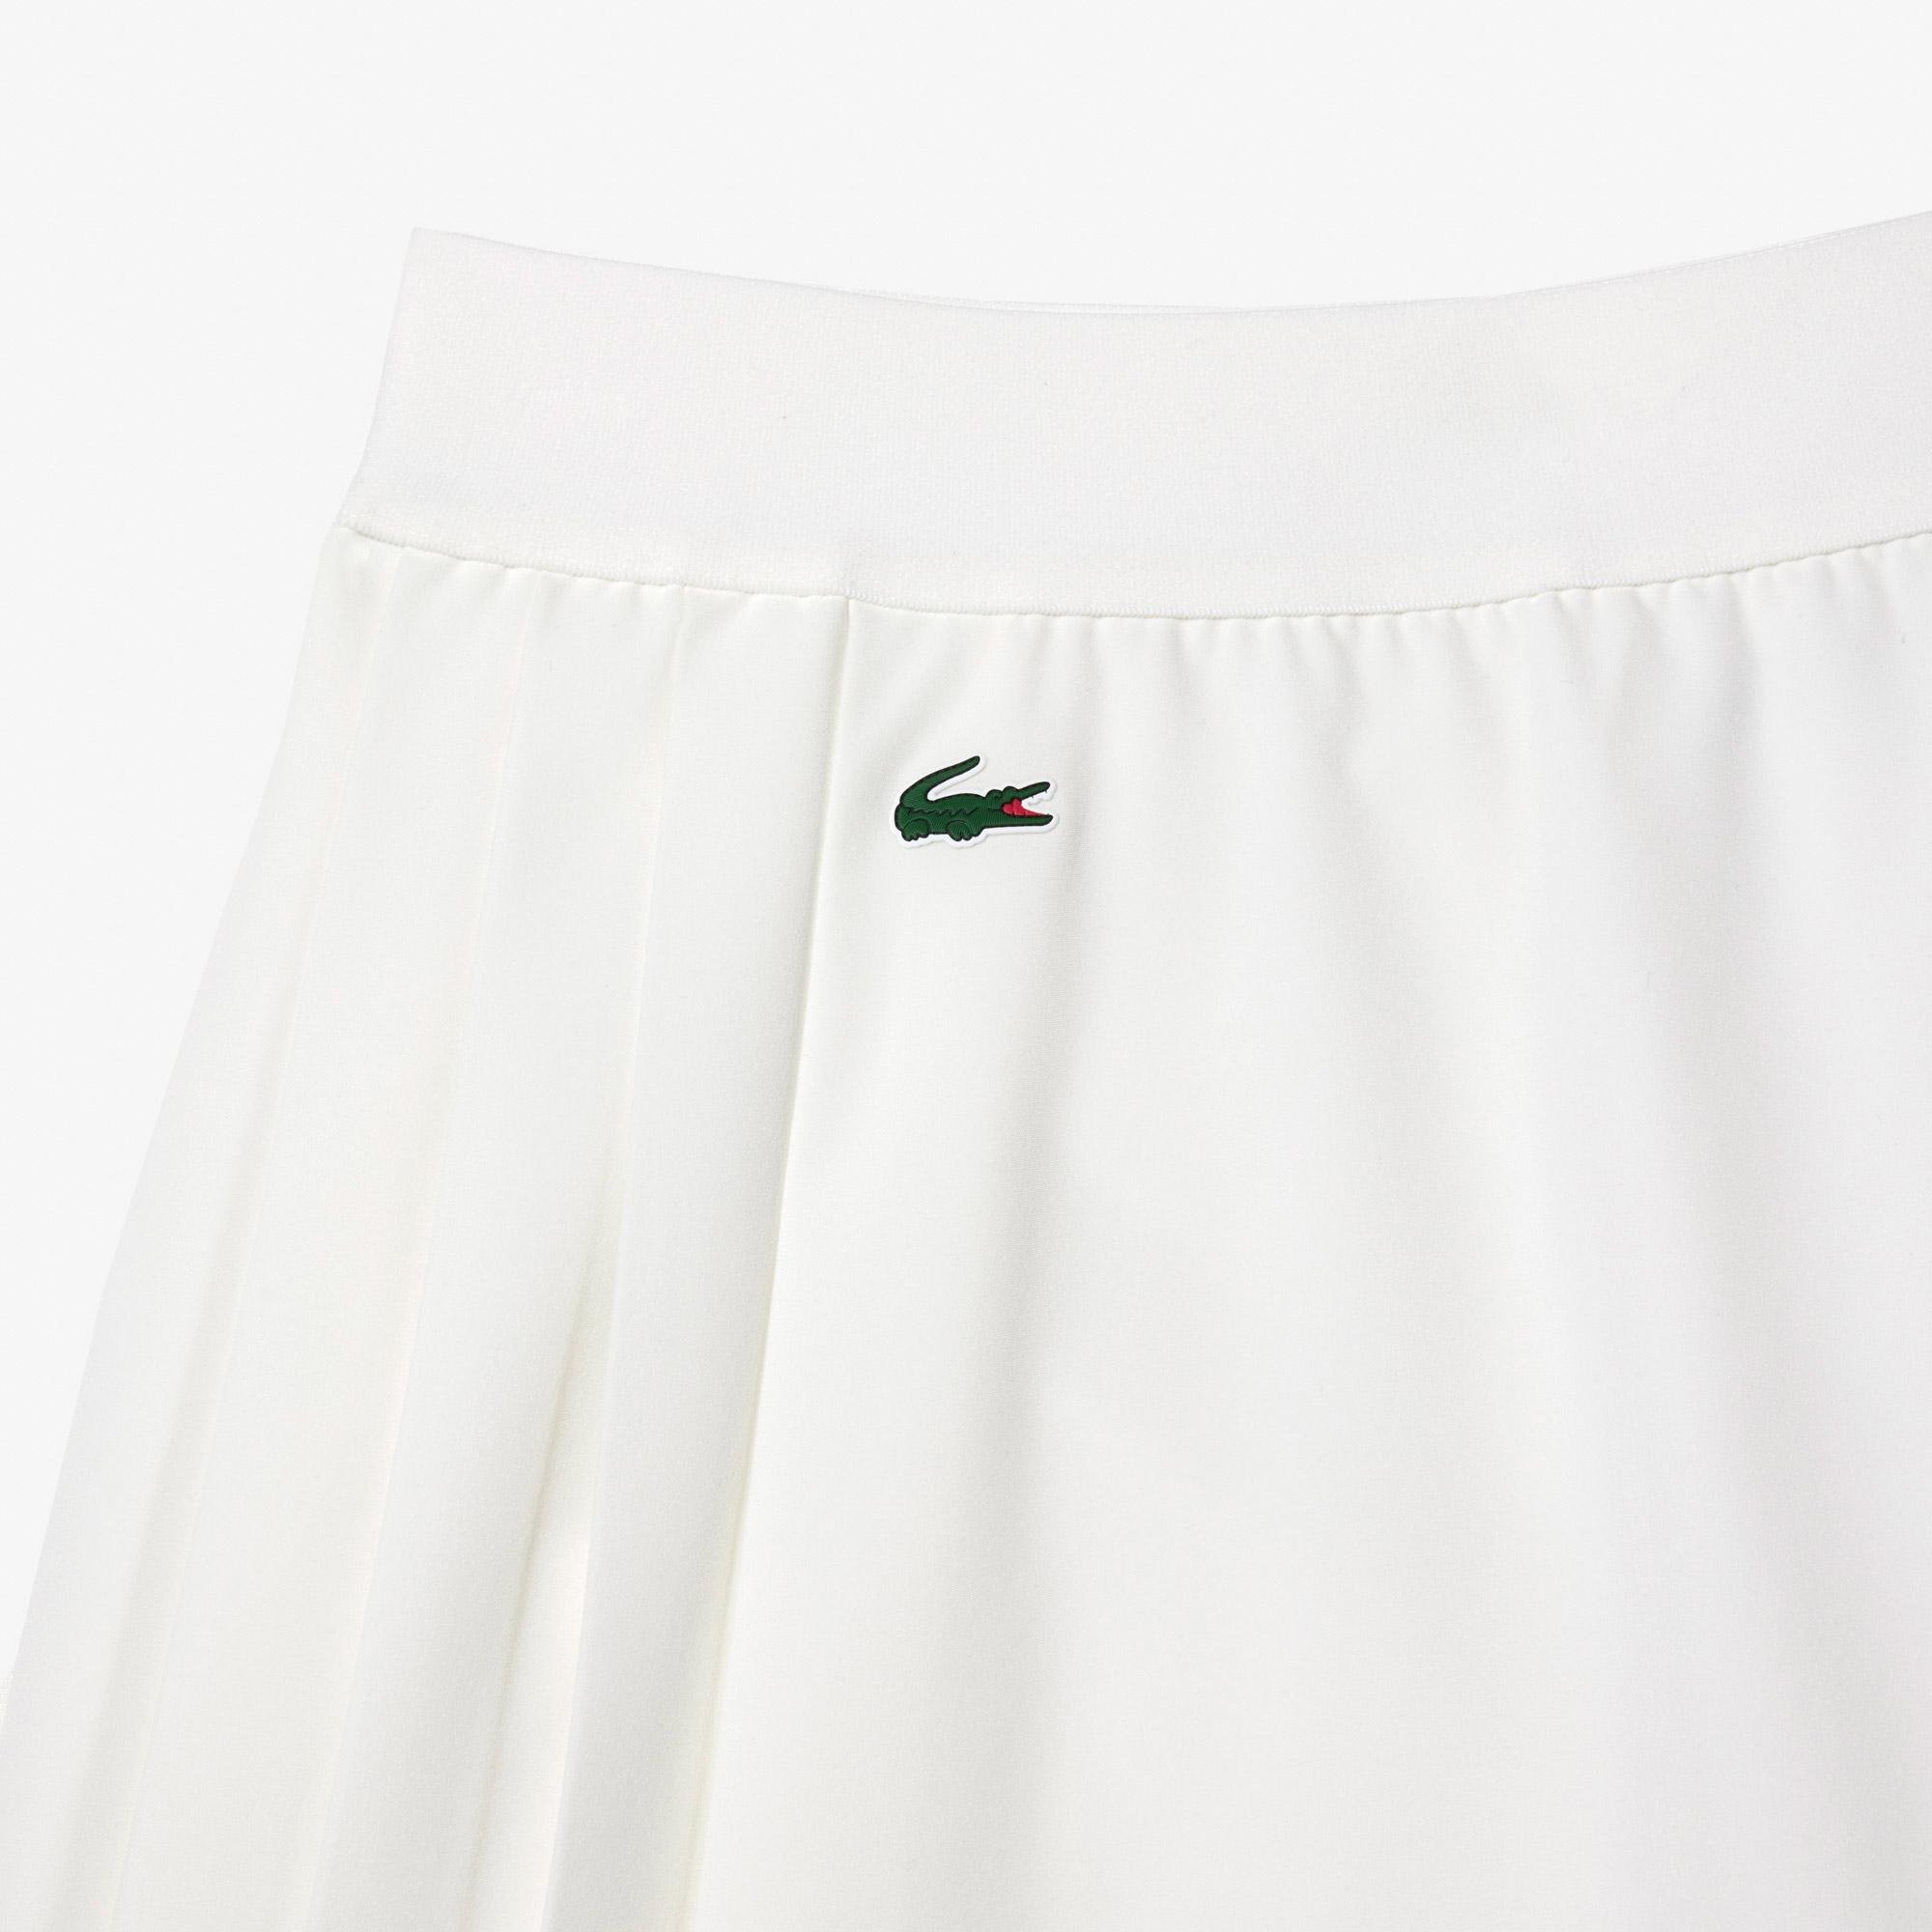 Lacoste damska spódnica do golfa SPORT z wbudowanymi szortami